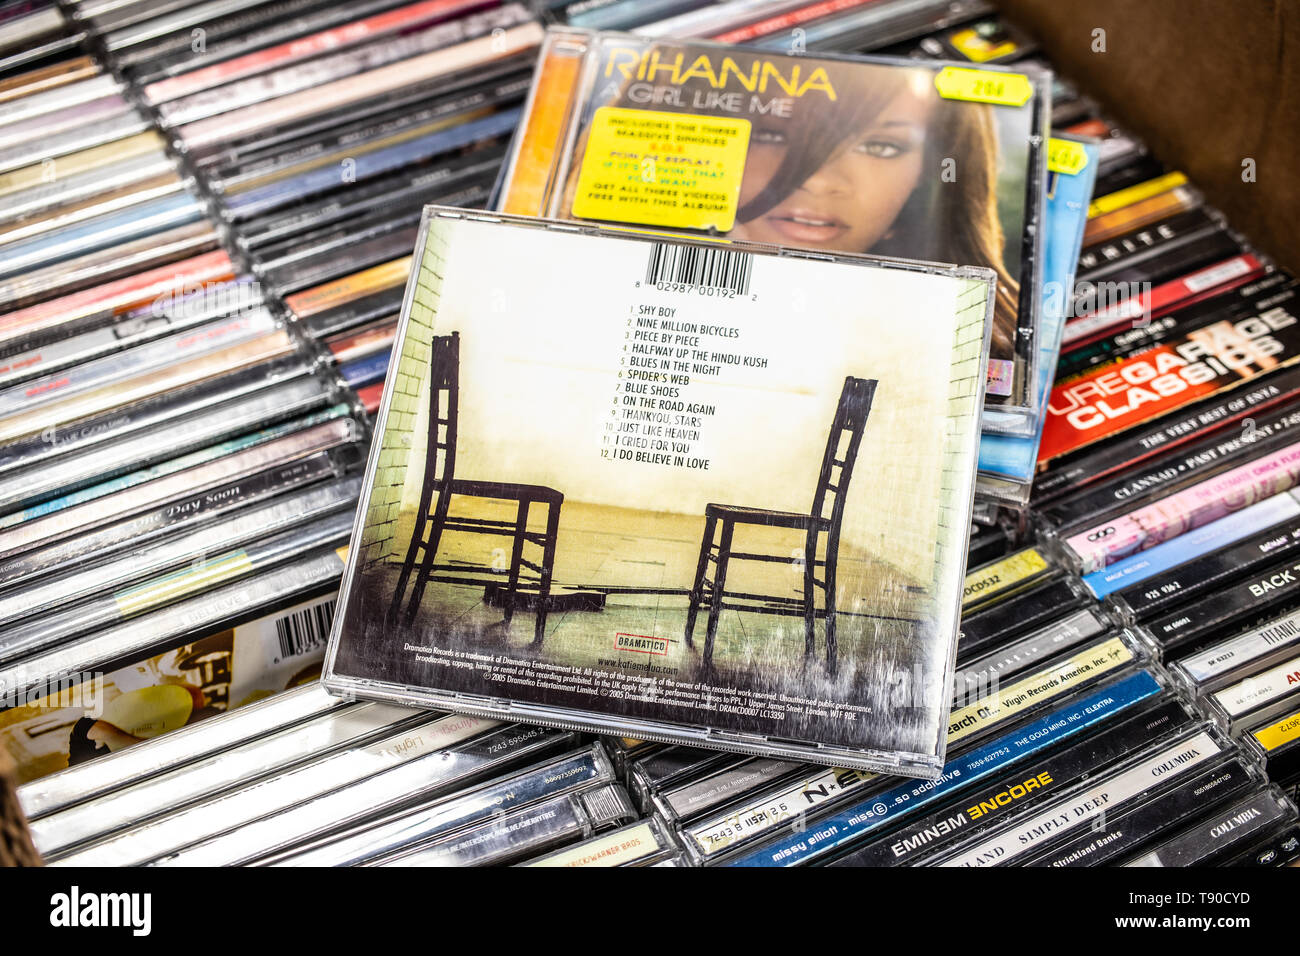 Nadarzyn, Polonia, 11 Maggio 2019: Katie Melua CD album pezzo per pezzo 2005 sul display per la vendita, British-Georgian famoso cantante e cantautore, cd Foto Stock